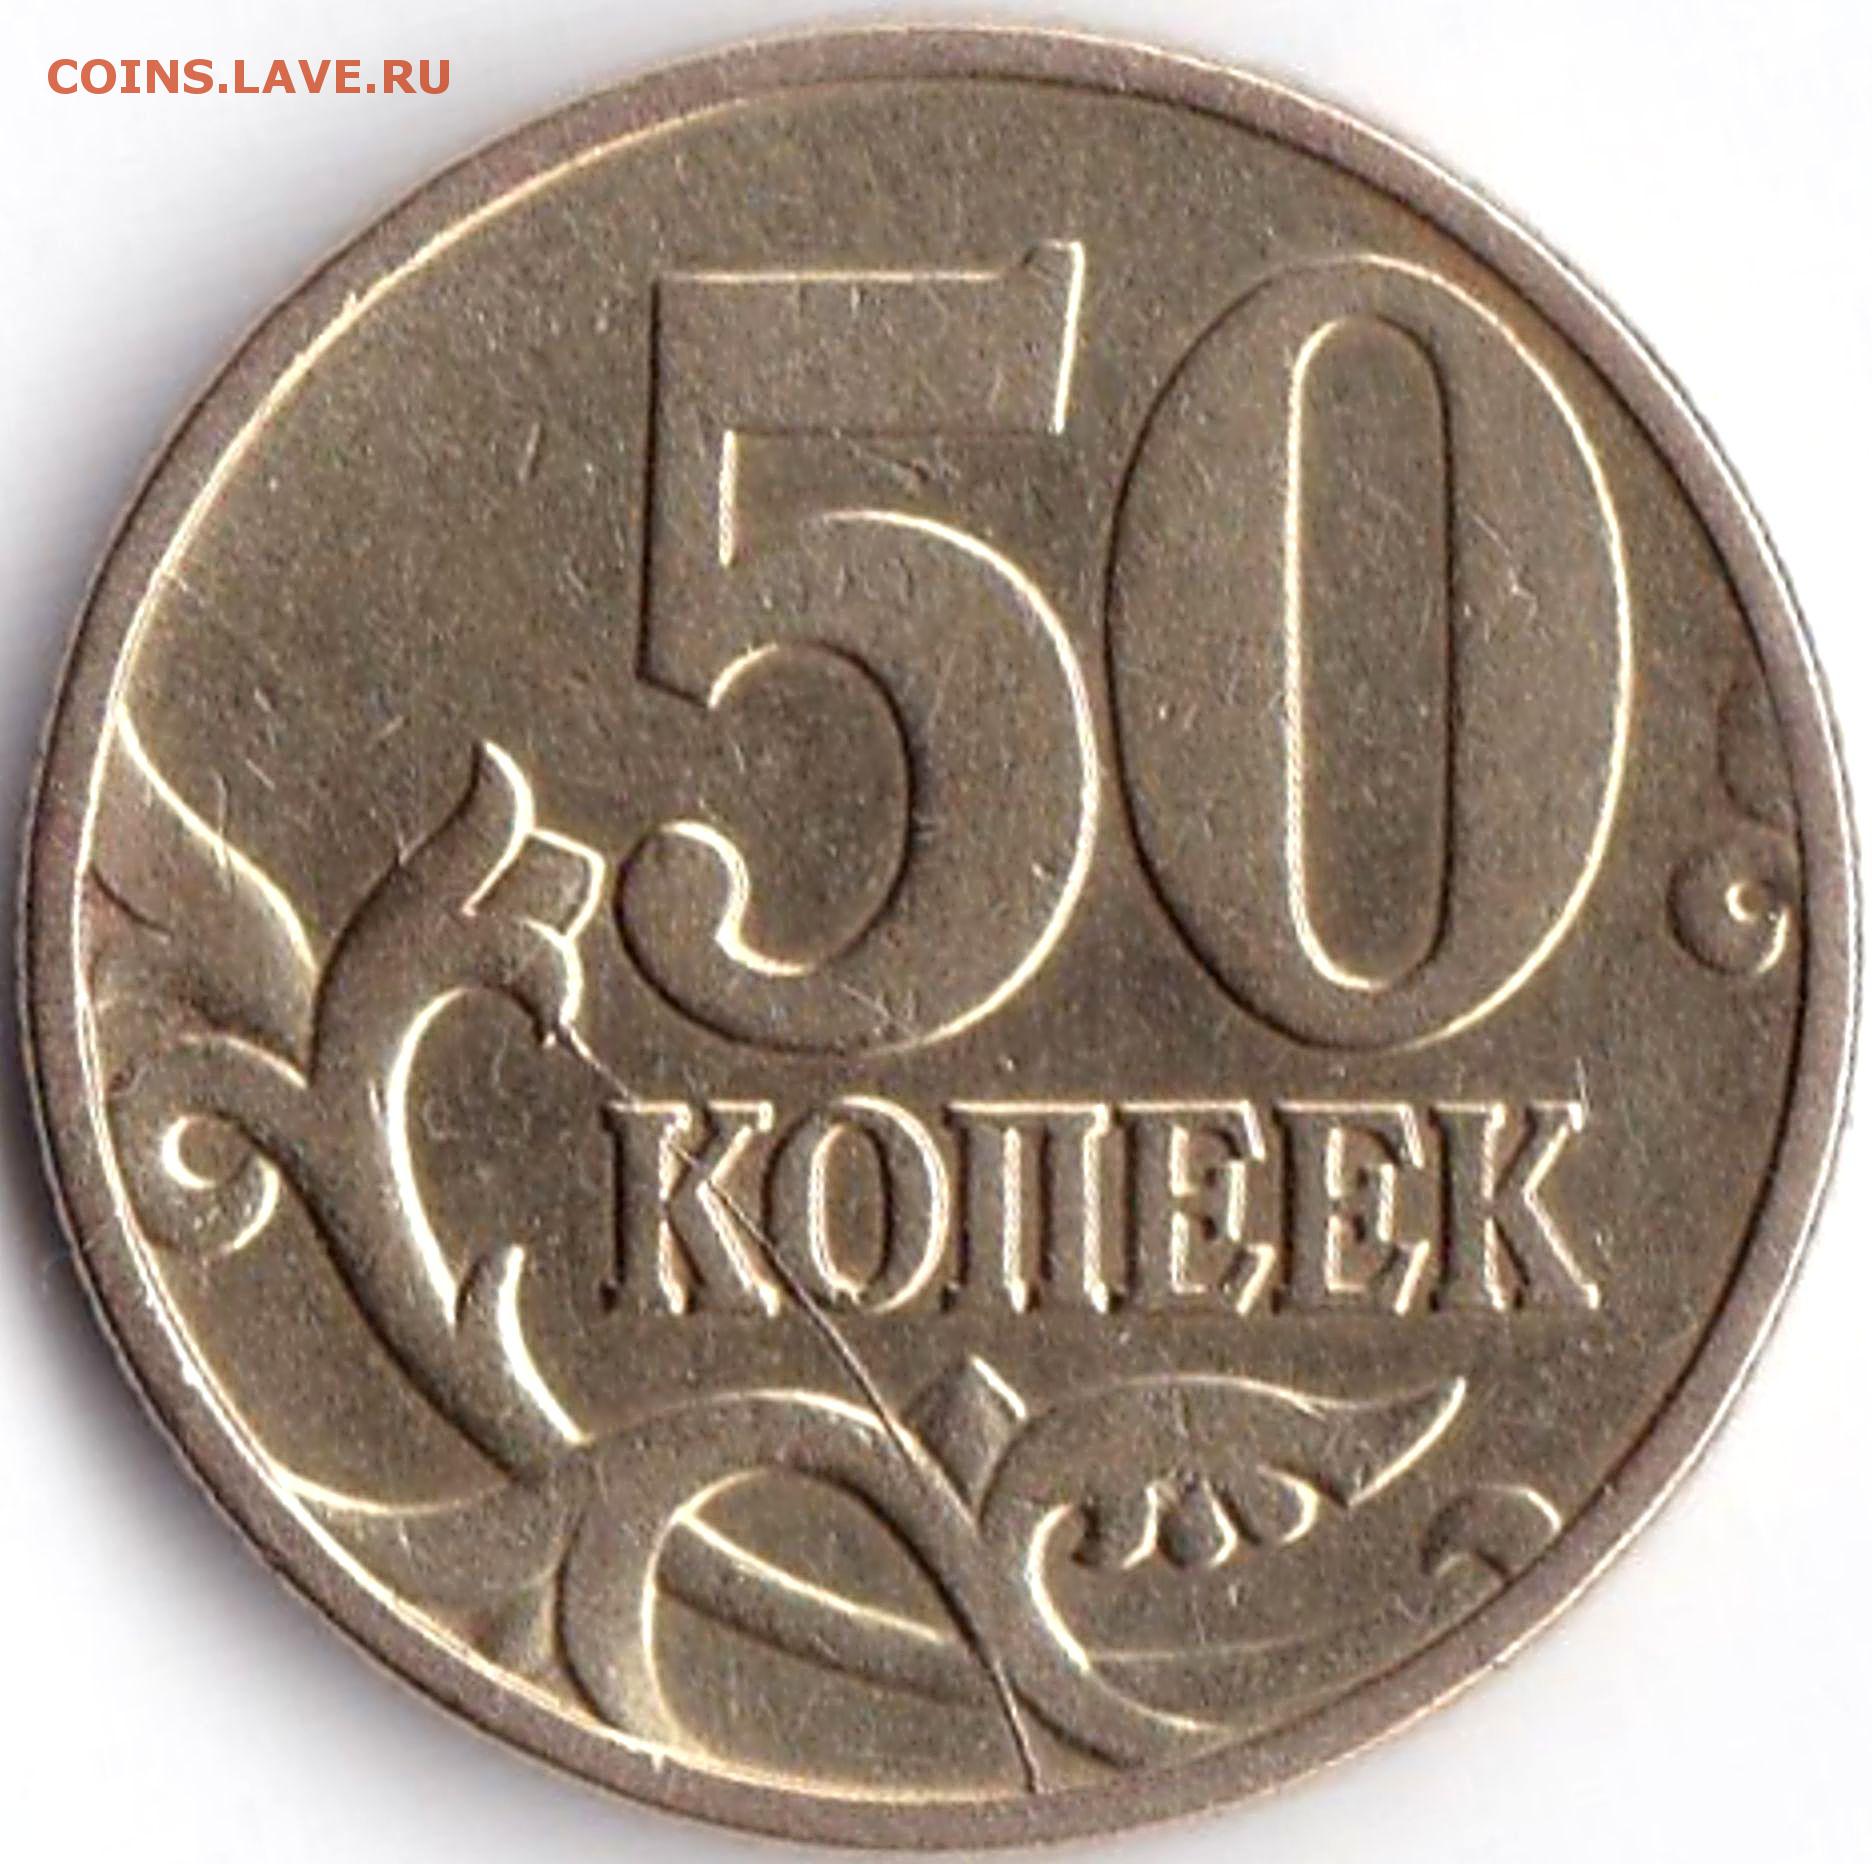 Один рубль пятьдесят копеек. 50 Копеек 1997 м. Монета 50 коп.2012 г.ММД. 50 Копеек 2002 СП. Монета 5 копеек 1997.